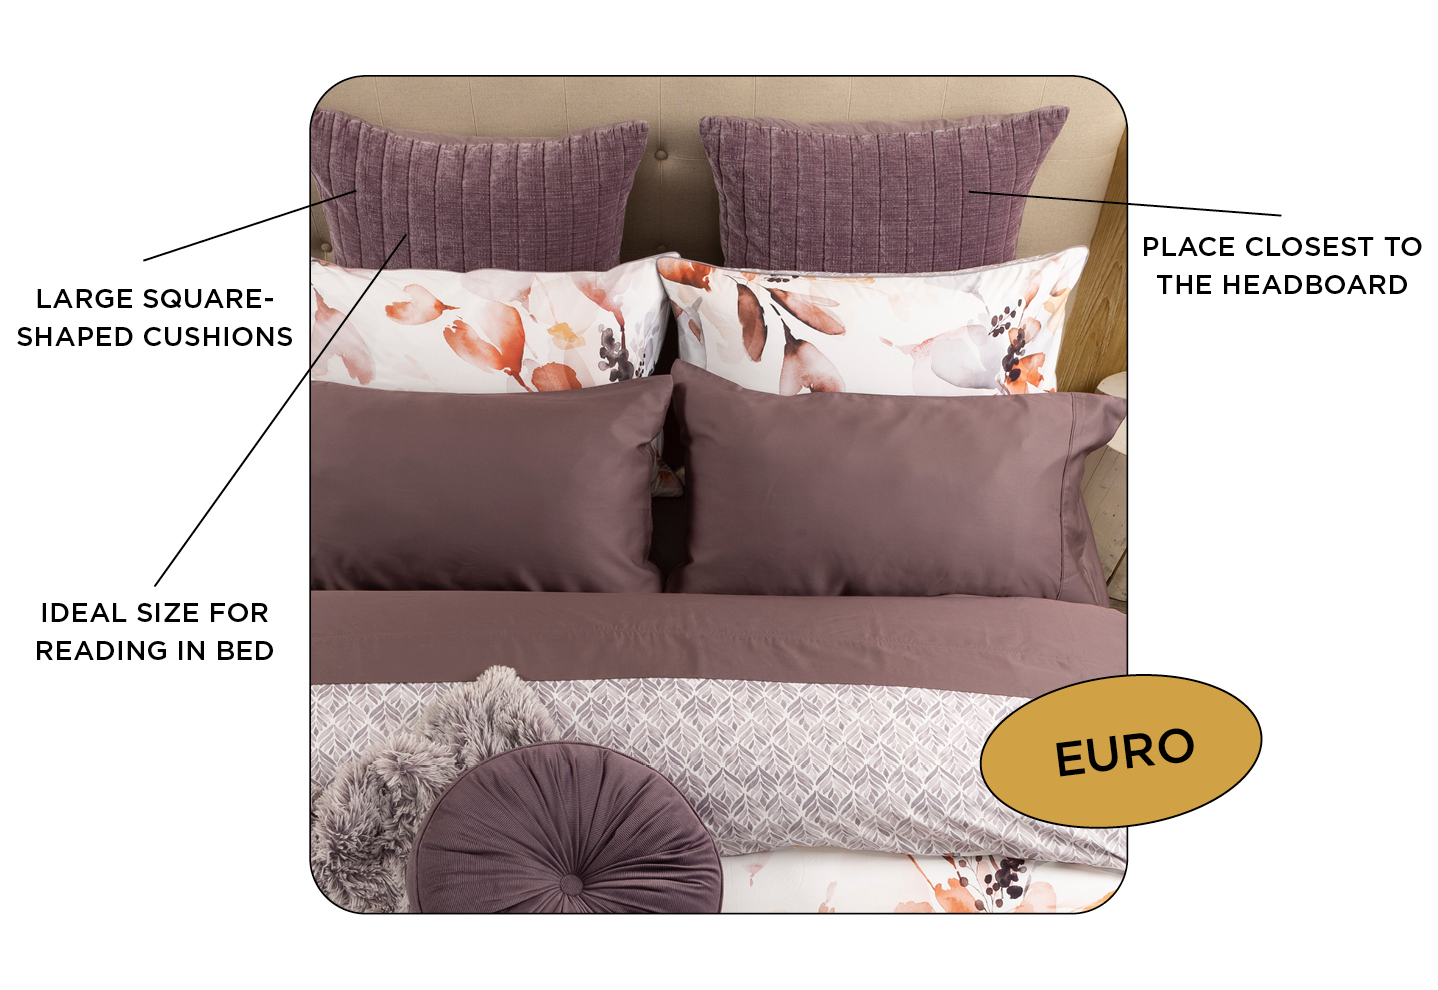 Diagramme des cache-oreillers Euro violets décoratifs, des cache-oreillers Bergen et de notre coussin rond en velours côtelé en mauve sur un lit.